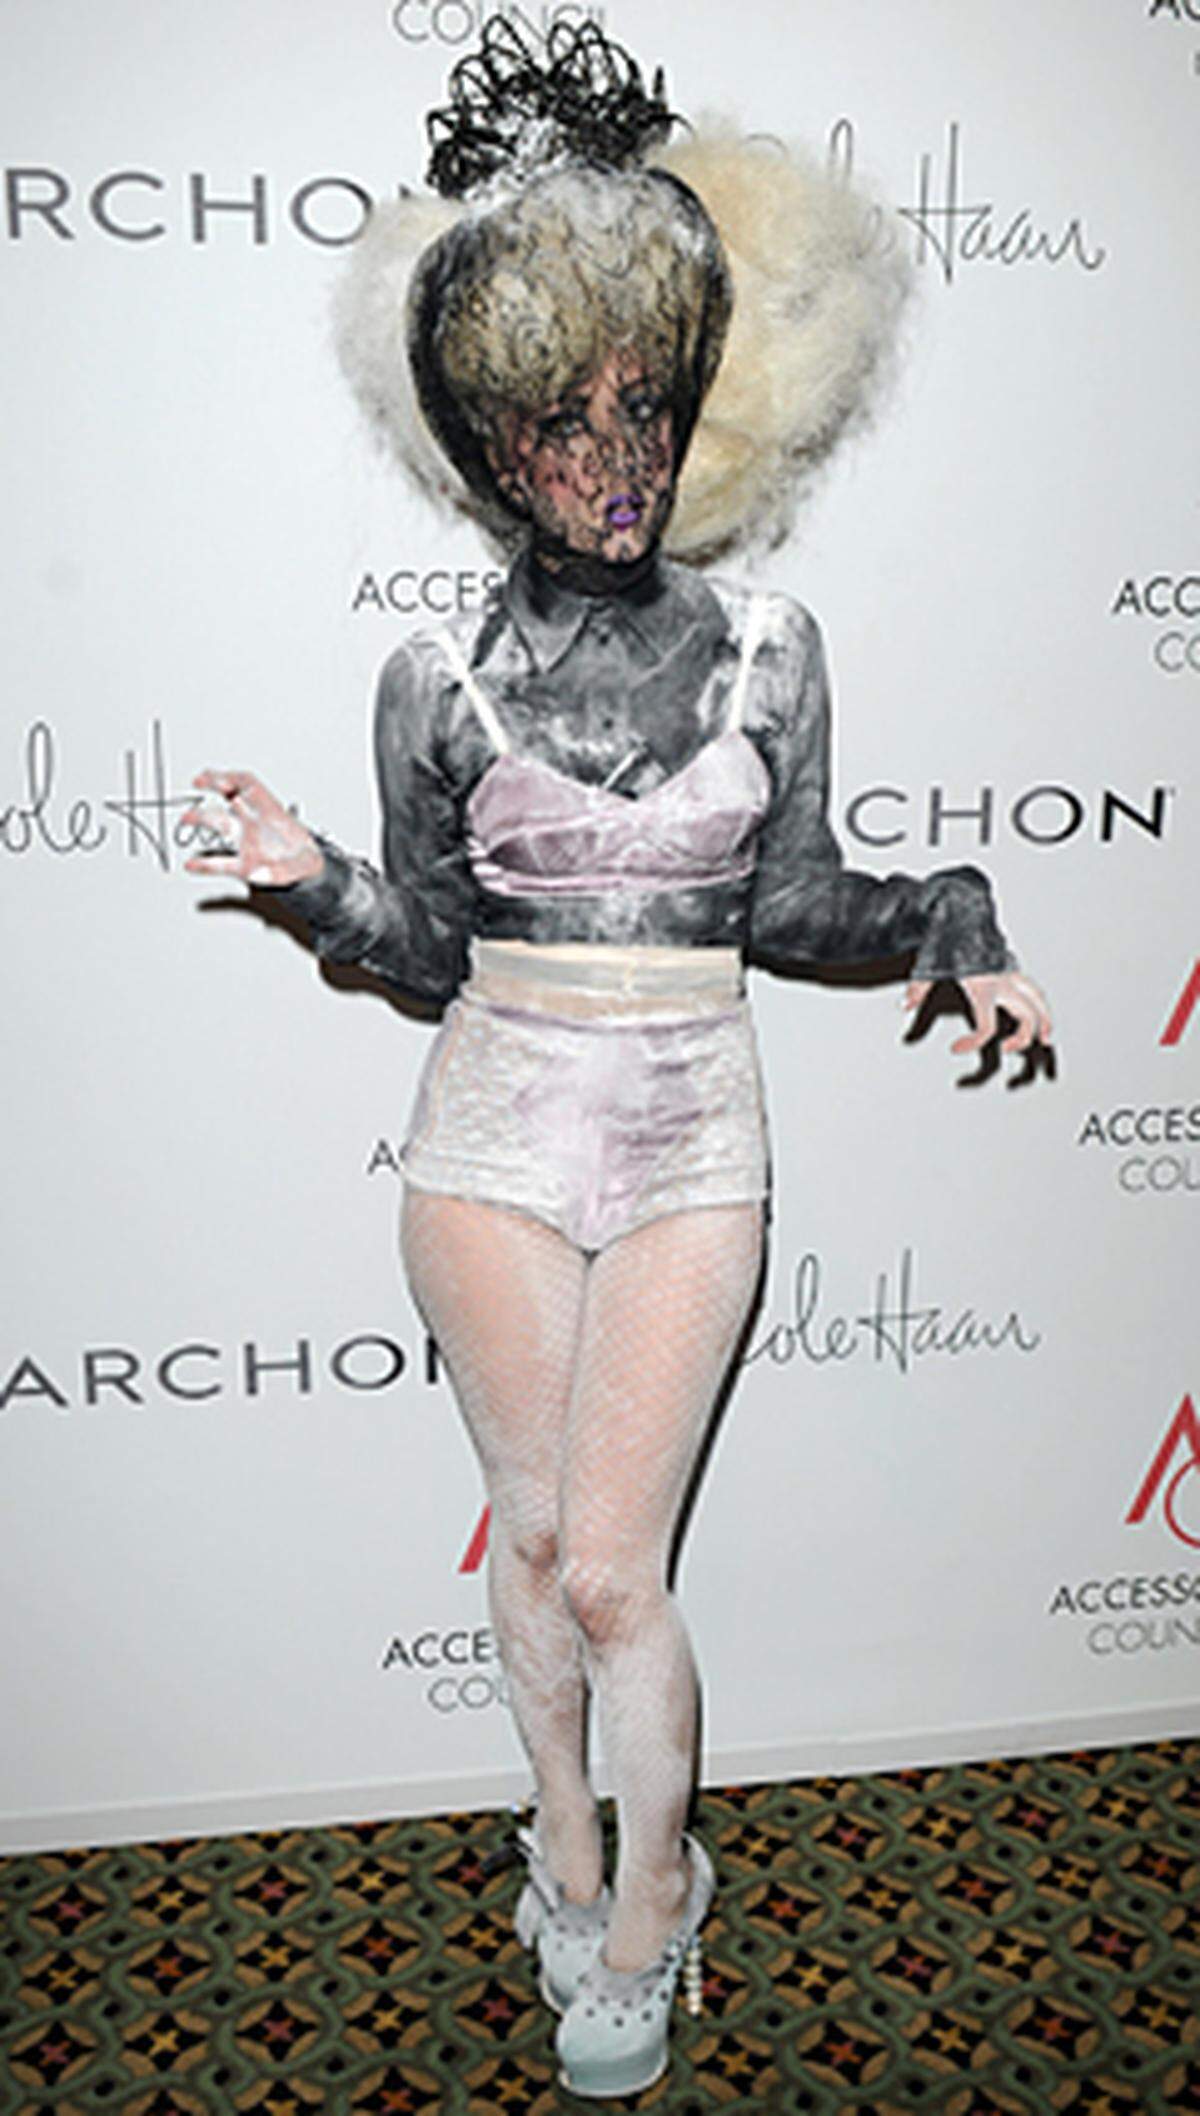 Bei den "Ace Awards" 2009("Accessoires Council Excellence") in New York tauchte Stefani Joanne Germanotta, wie Lady Gaga mit bürgerlichem Namen heißt, in einer seltsamen Kreation auf: Ihr Gesicht verhüllte die Sängerin mit schwarzer Spitze, hinter der sich ihr wallendes Haar aufbaute. Die restliche Kleidung war nicht minder überraschend: Schillernde Hot Pants, eine grau-schwarze Bluse mit einem fliederfarbenen BH darüber und hackige Plateau-Schuhe - garniert mit Kreidestaub.  Für diese Kreativität gab's auch einen Preis: Lady Gaga wurde mit dem "Stylemaker-Award" ausgezeichnet.